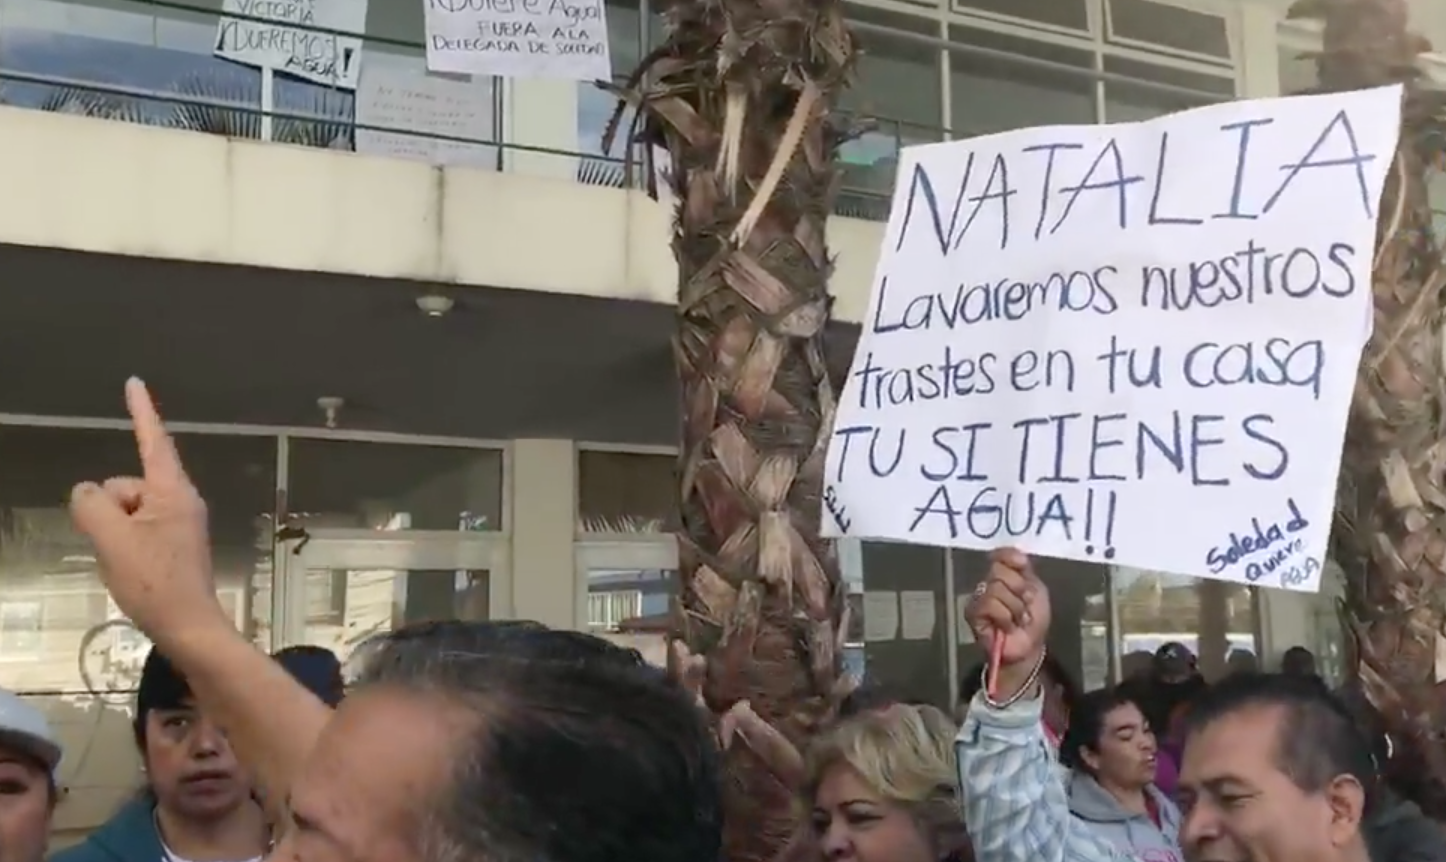  Que se manifiesten, pero sin violencia: Nava Palacios